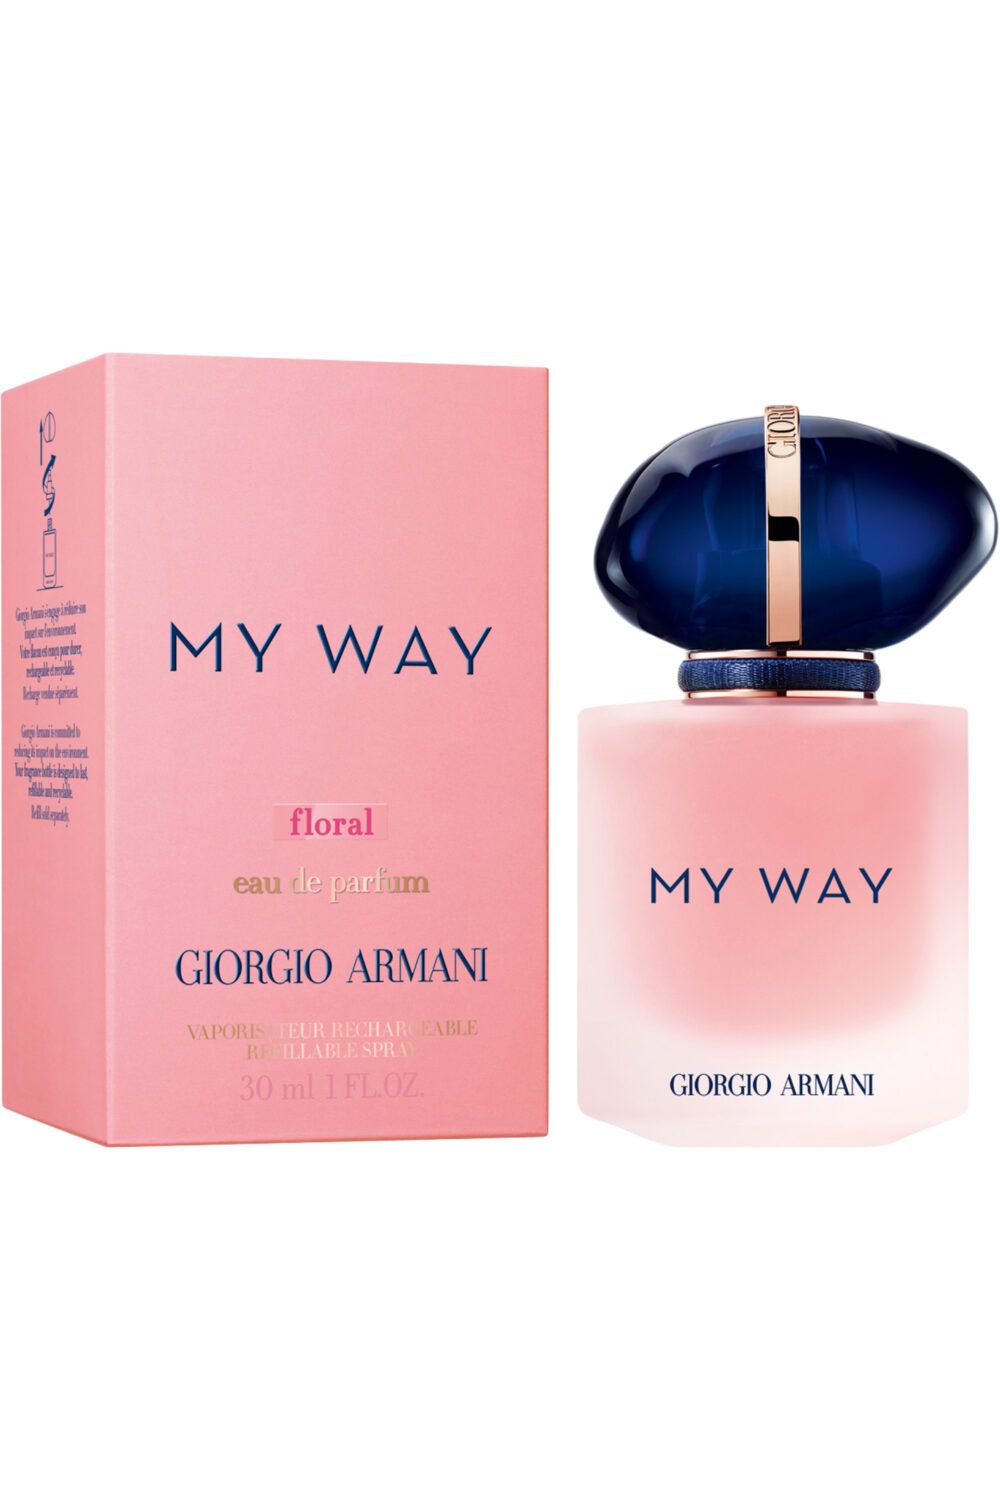 Armani - My Way Floral Eau de Parfum rechargeable 30ml